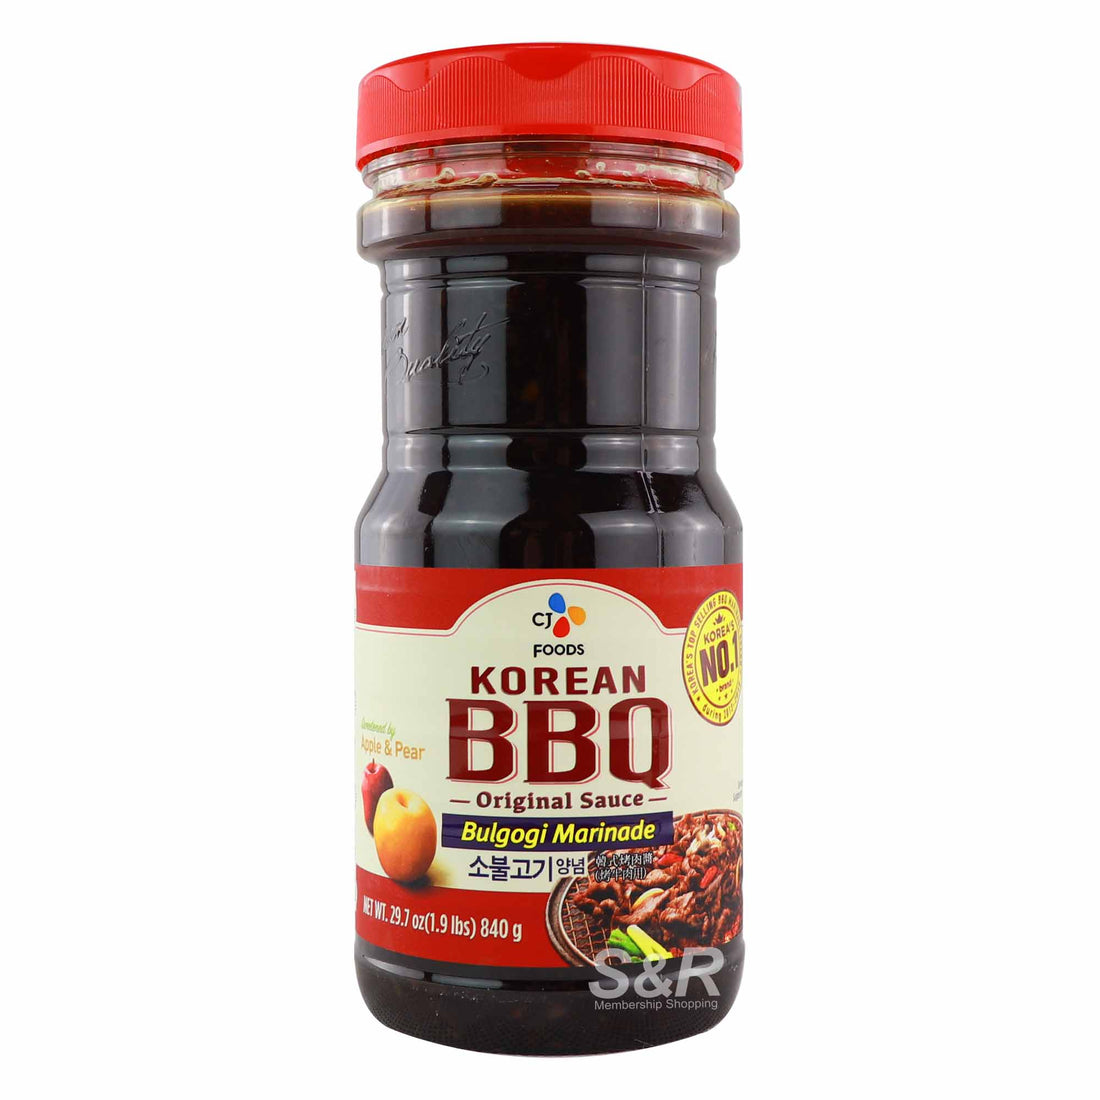 CJ Korean BBQ Sauce Bulgogi Marinade 1.85lbs (840g)